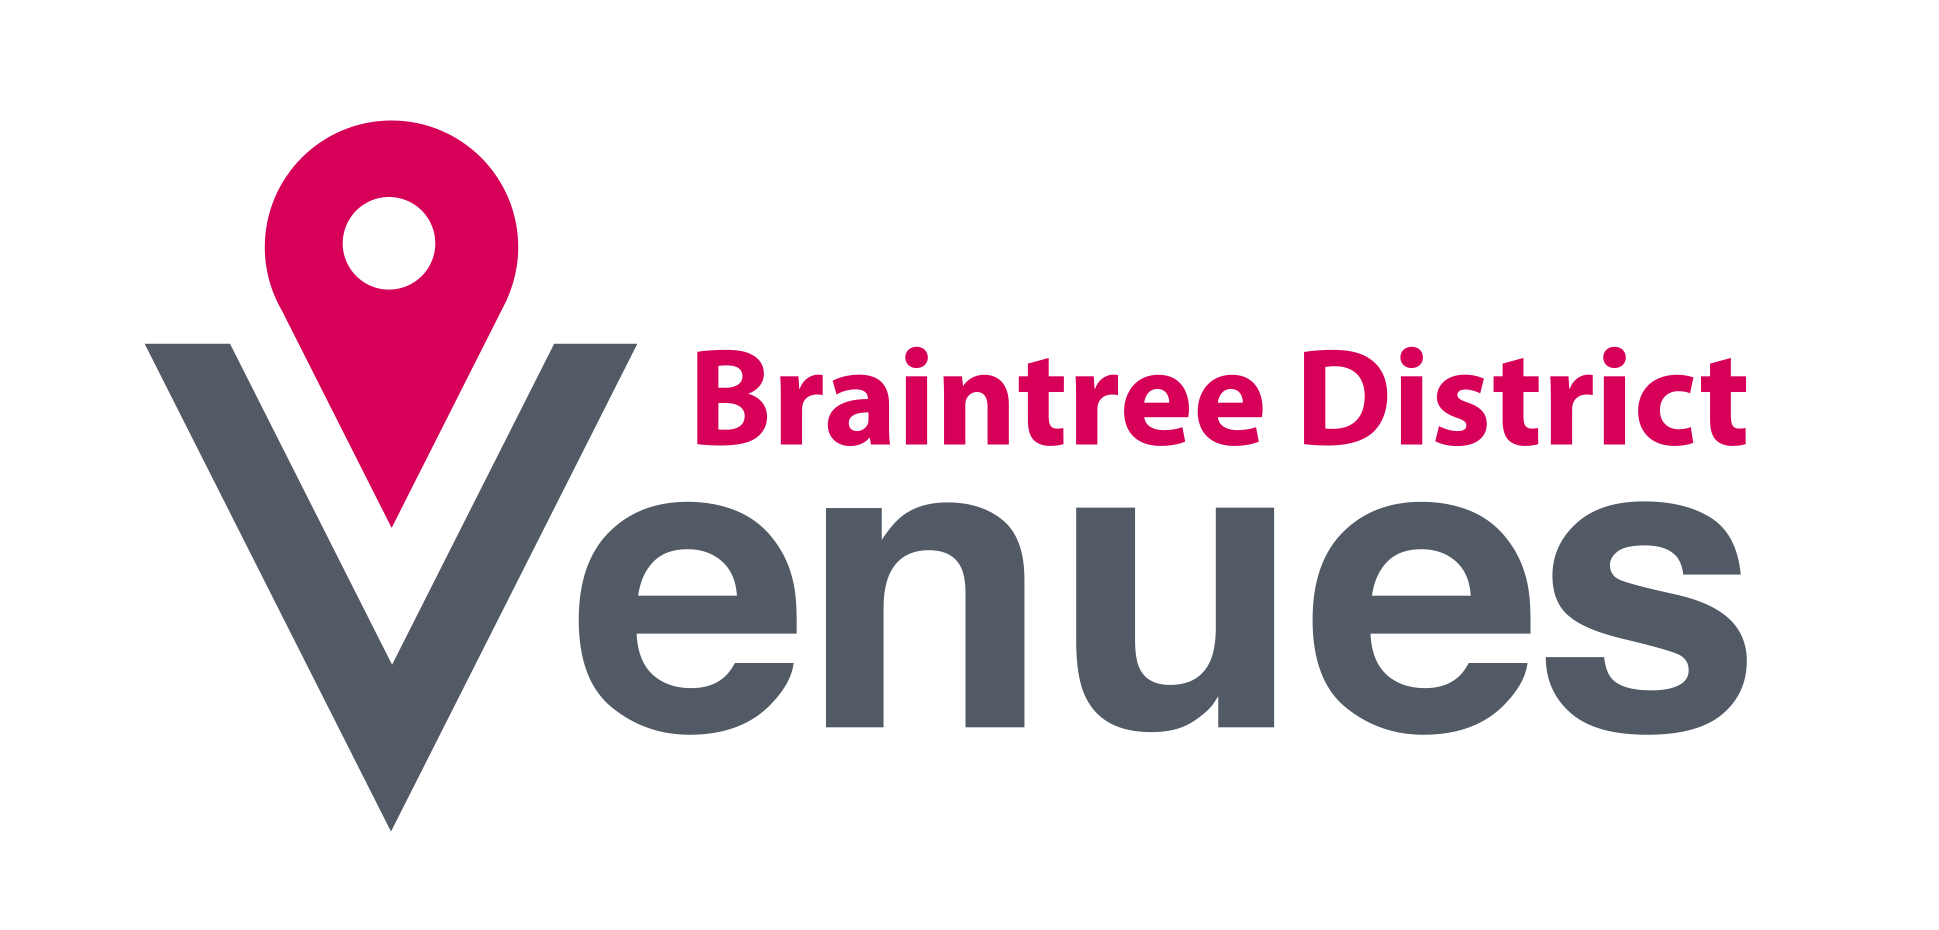 Braintree district venues